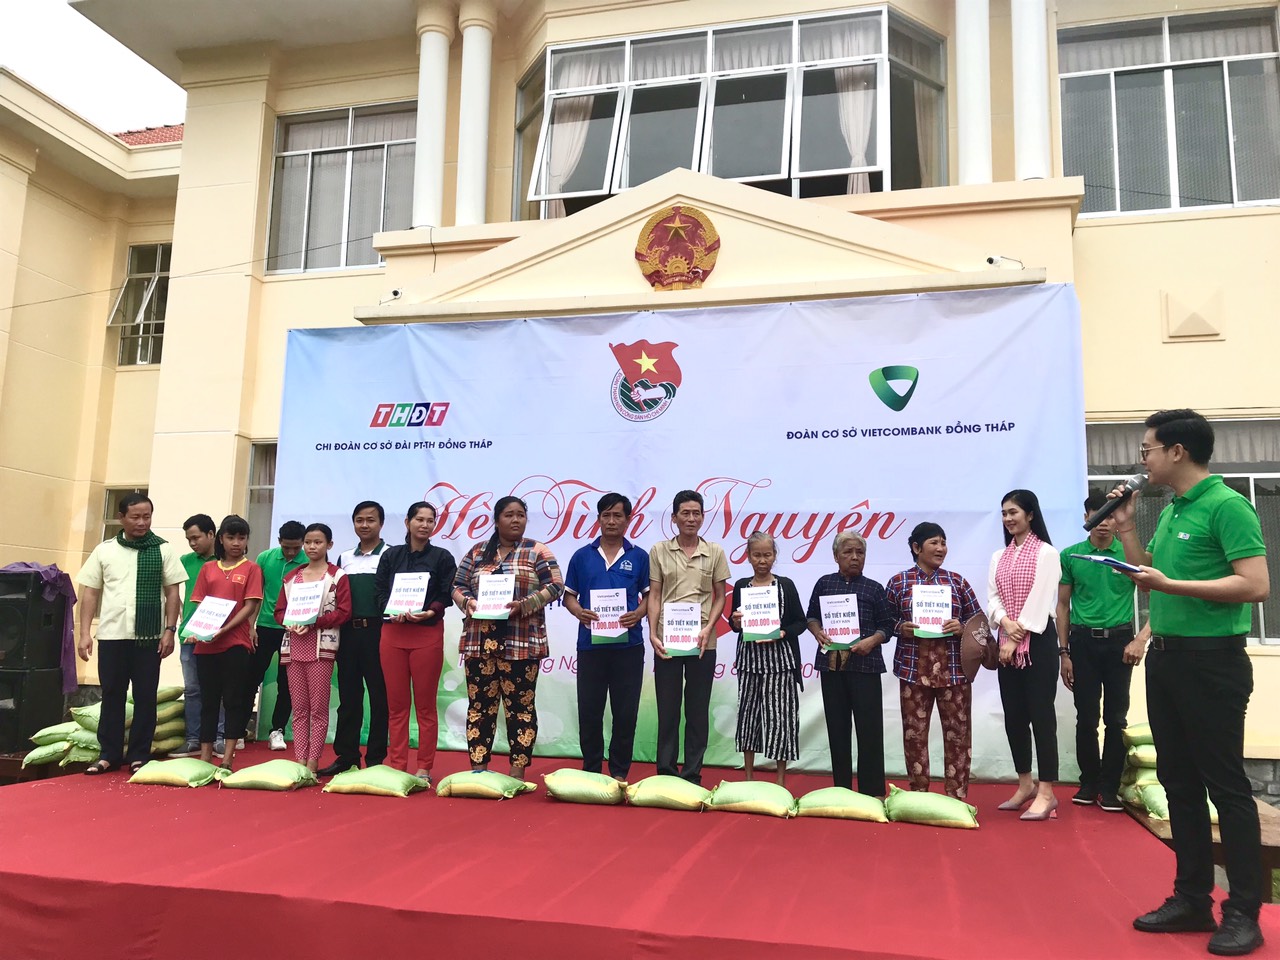 Đoàn thanh niên Vietcombank Đồng Tháp tổ chức chương trình Nghĩa tình vùng biên giới